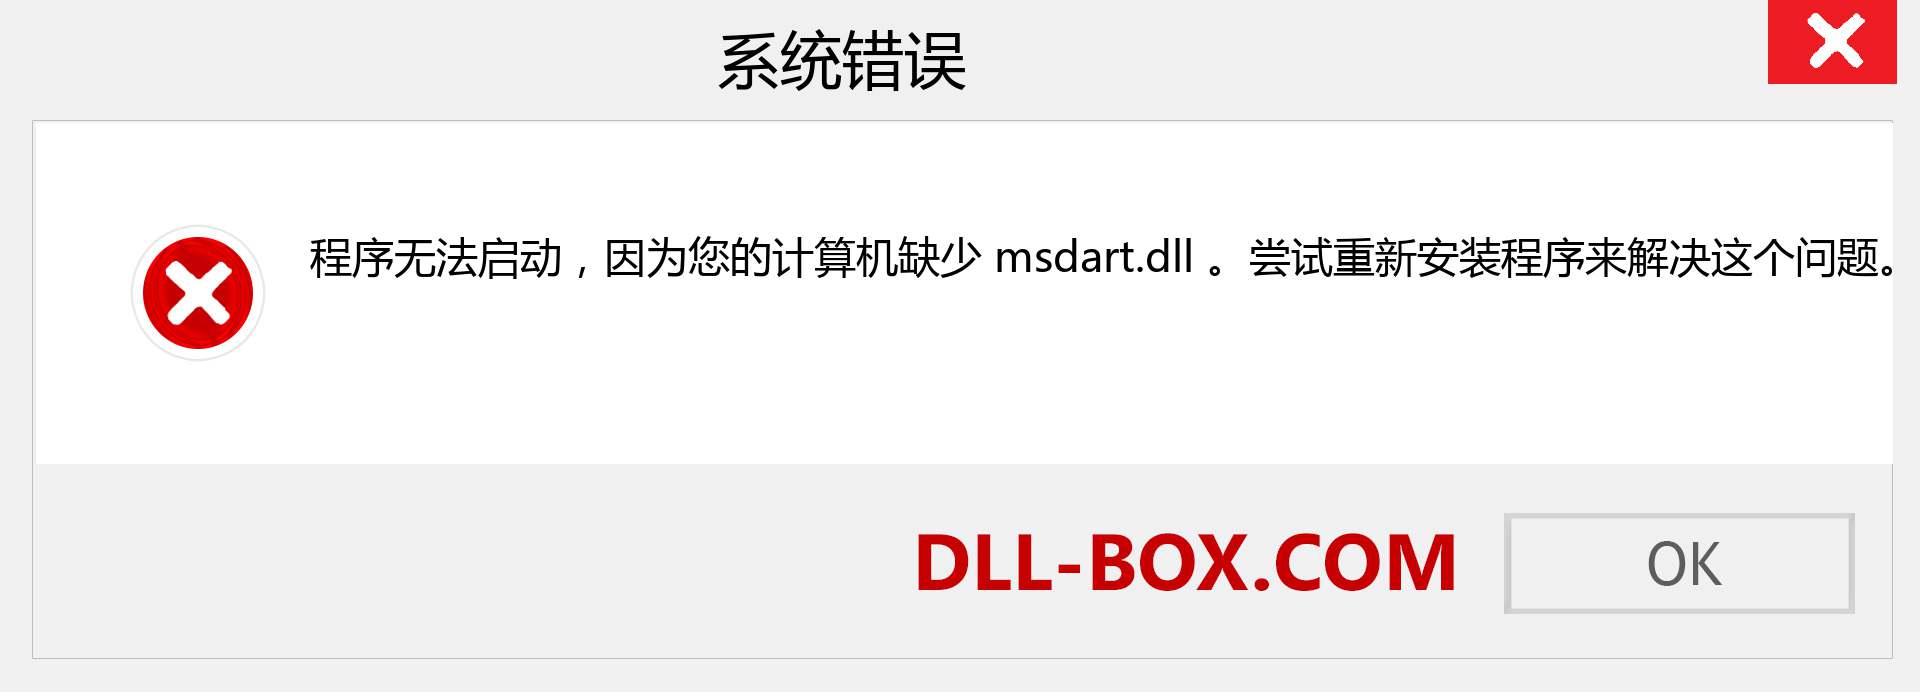 msdart.dll 文件丢失？。 适用于 Windows 7、8、10 的下载 - 修复 Windows、照片、图像上的 msdart dll 丢失错误